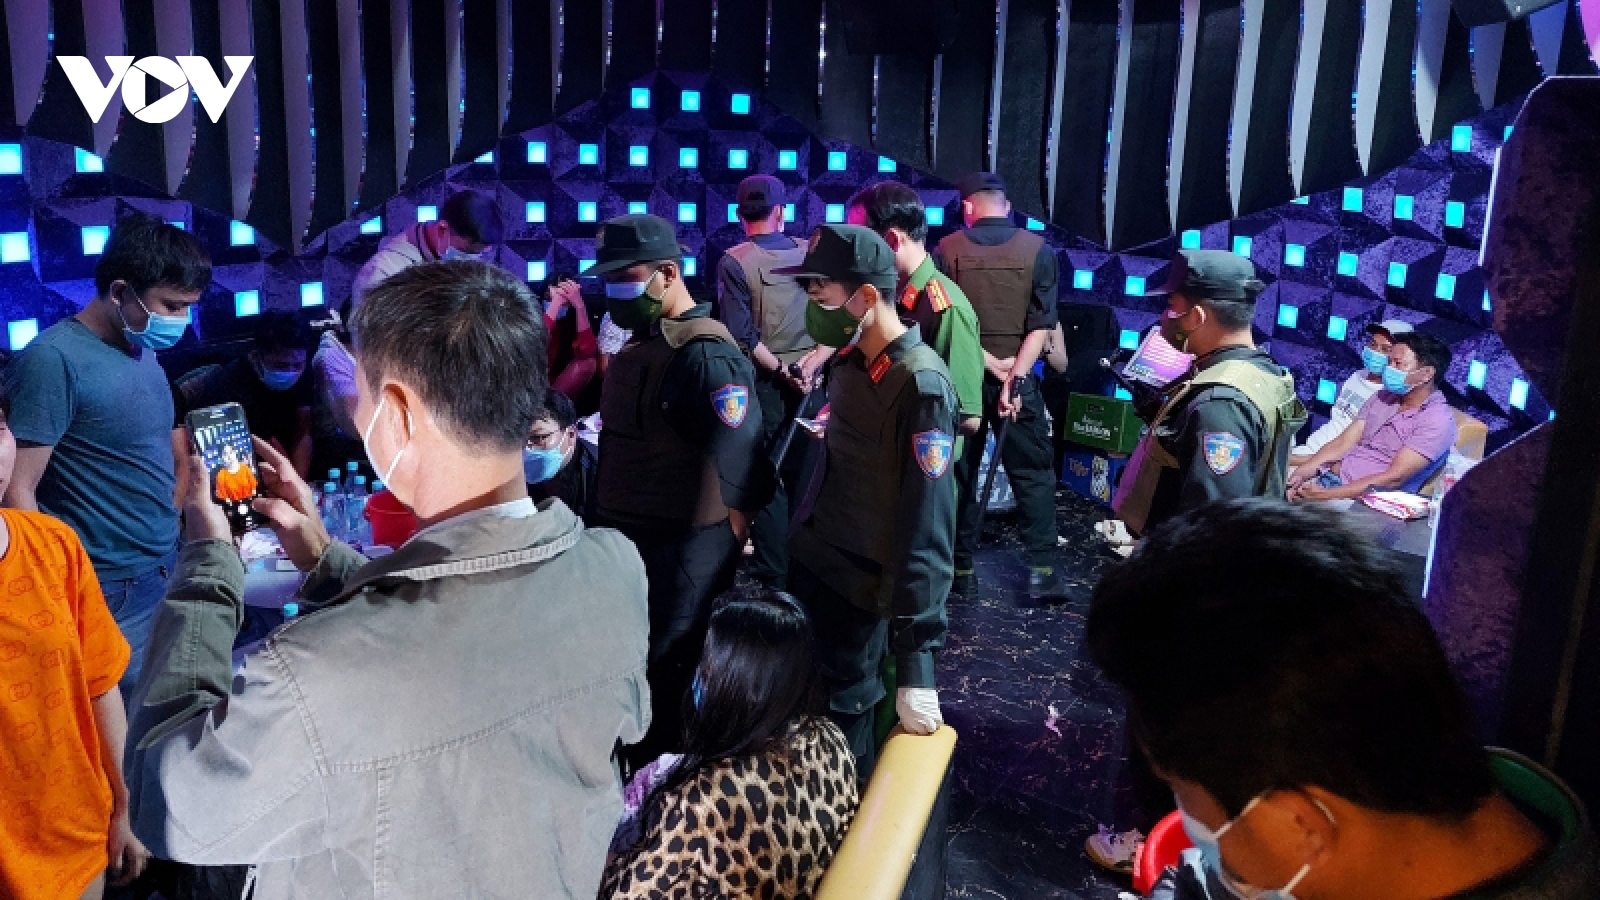 Đồng Tháp phát hiện 23 trường hợp sử dụng ma túy tại cơ sở karaoke